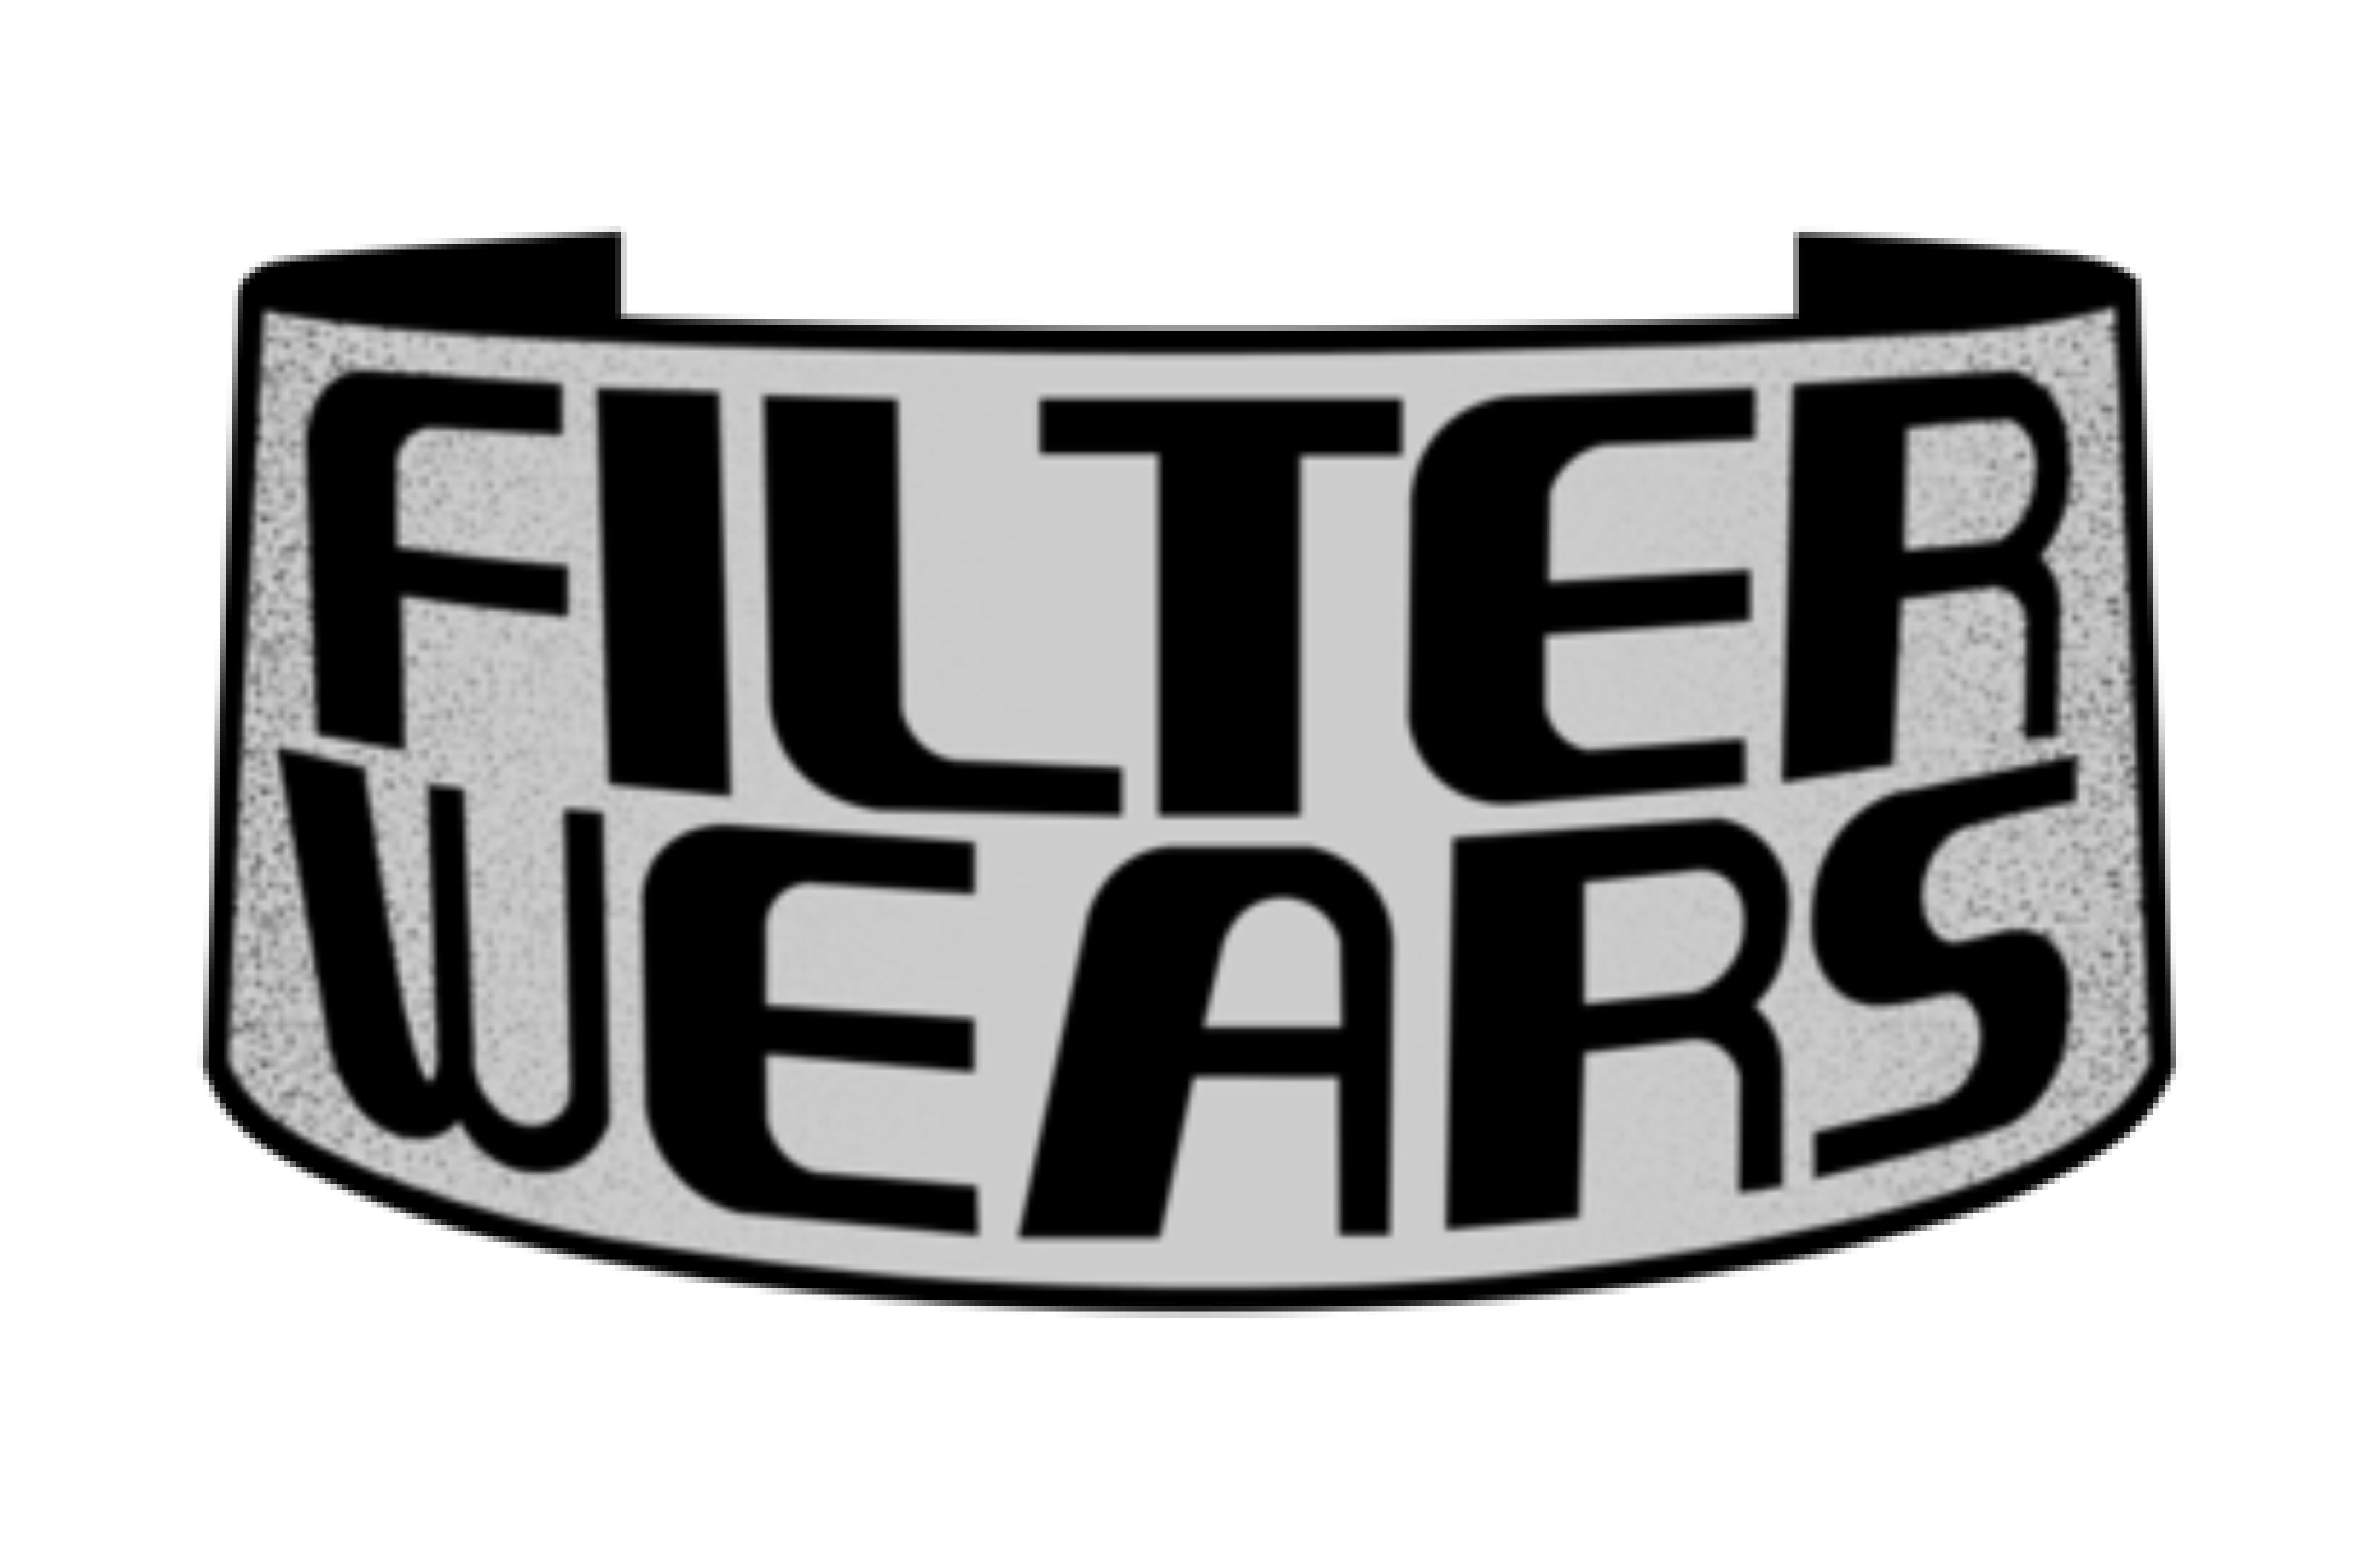 Filter Wears